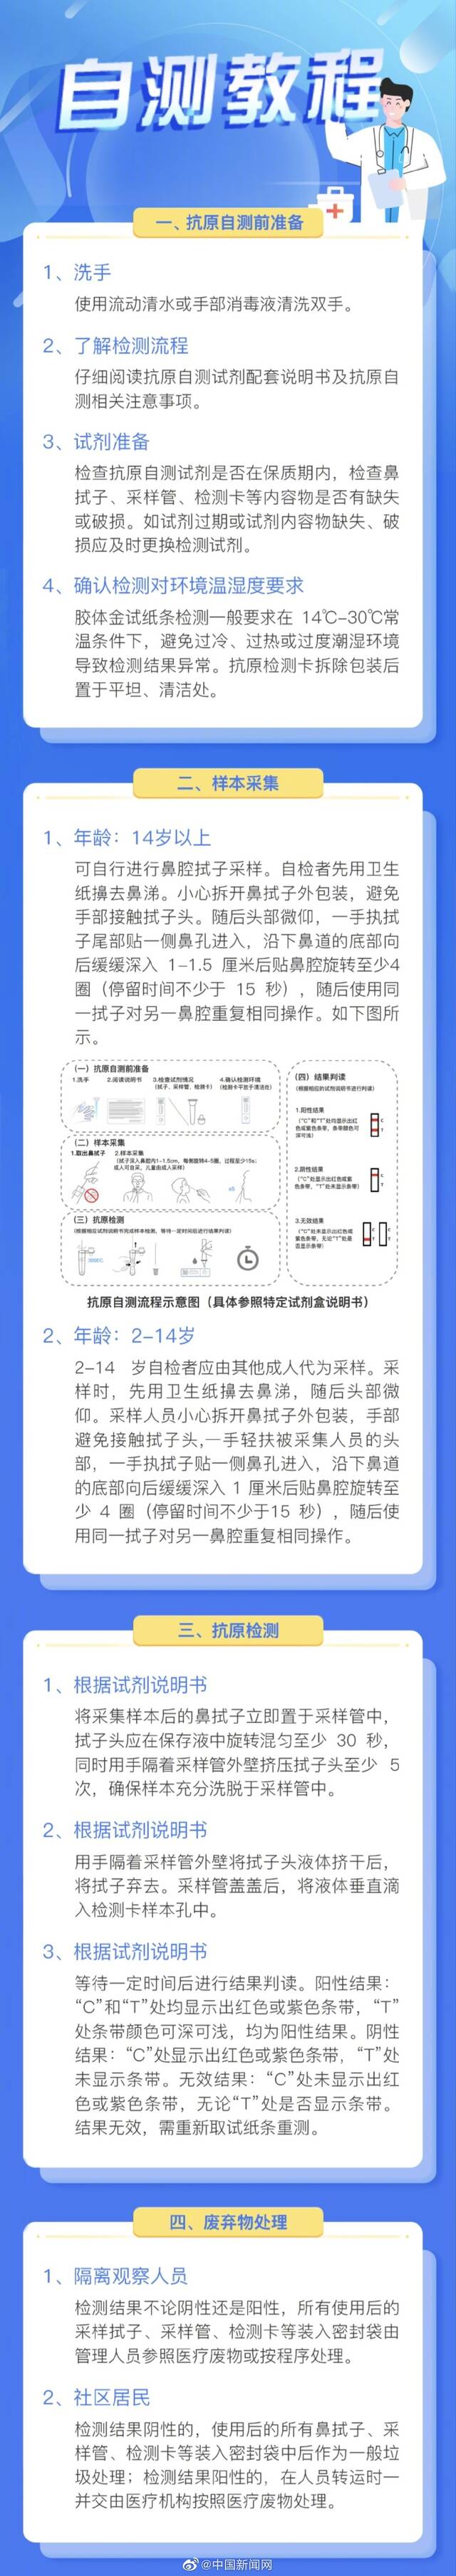 京抗原小程序来了 北京市民可自行上传抗原检测结果